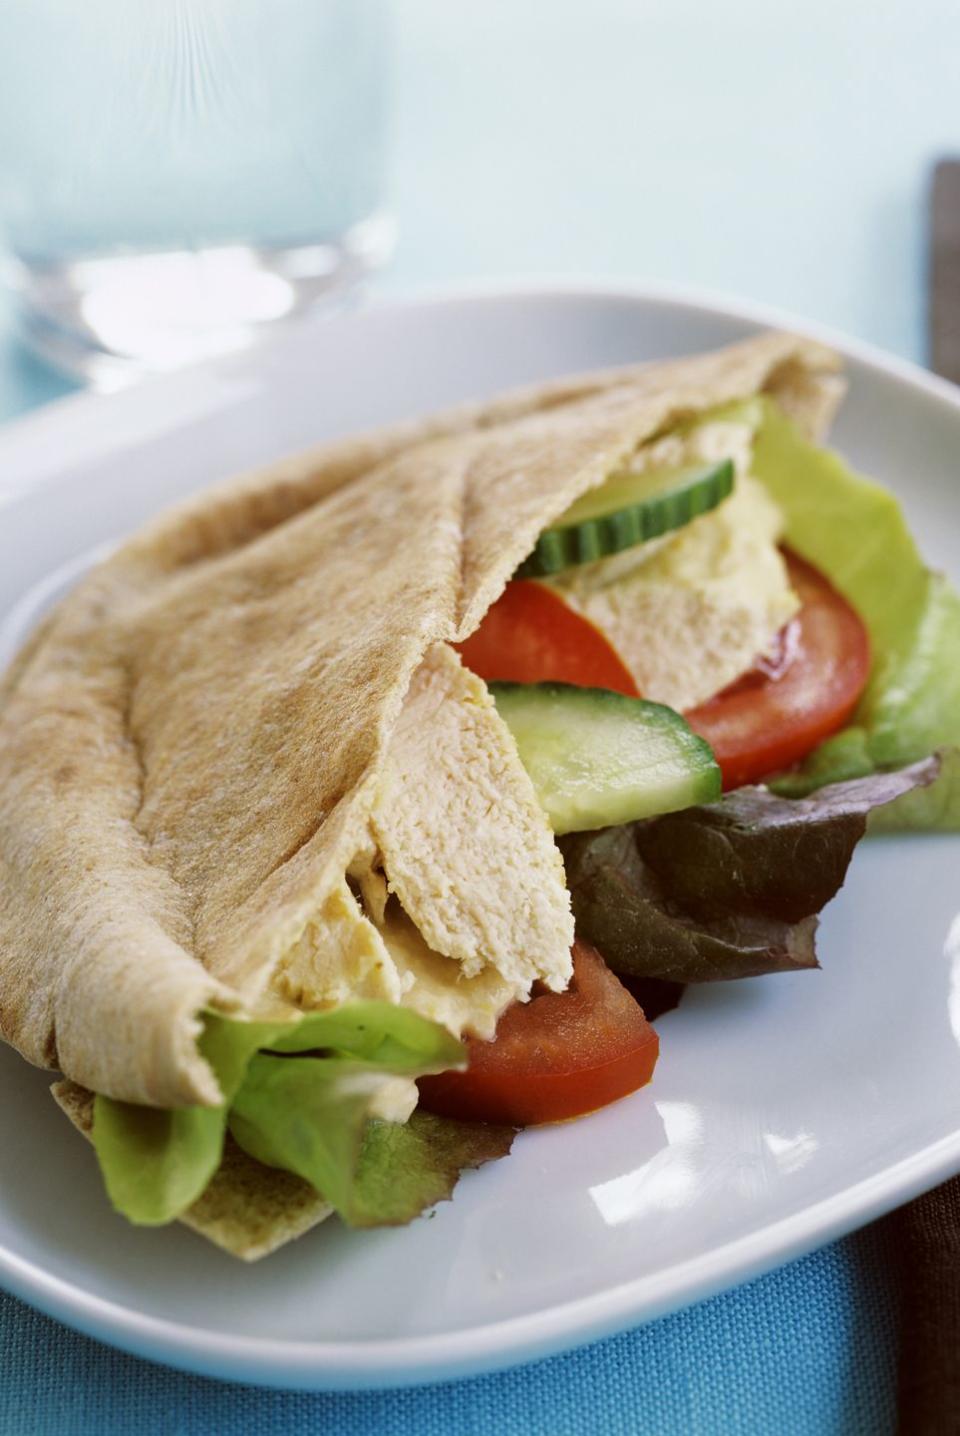 mediterranean diet lunch hummus pita sandwich with tomato and cucumber